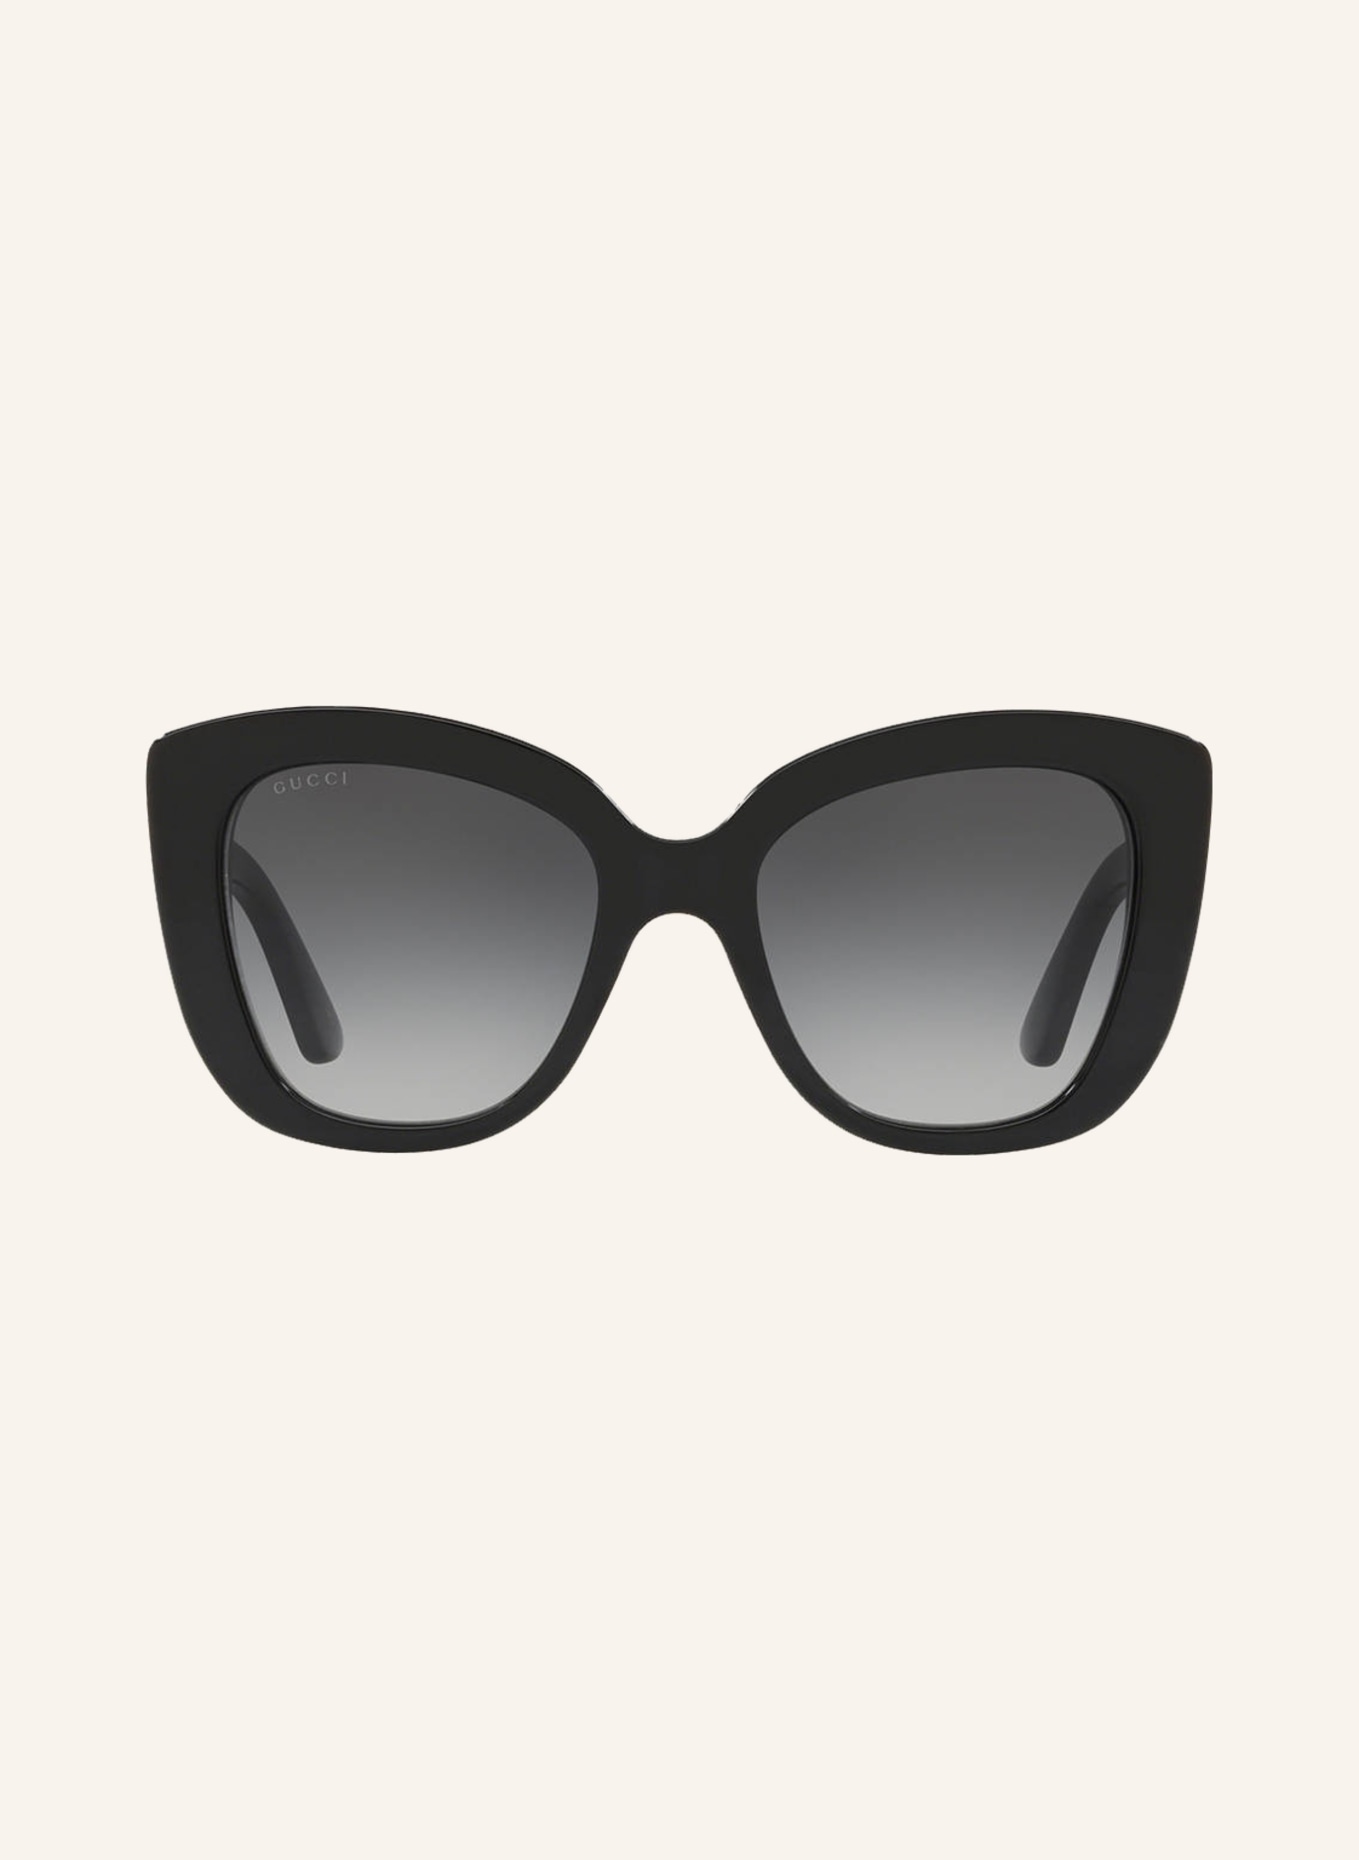 GUCCI Sunglasses GC001150, Color: 1330L3 - BLACK SHINY (Image 2)